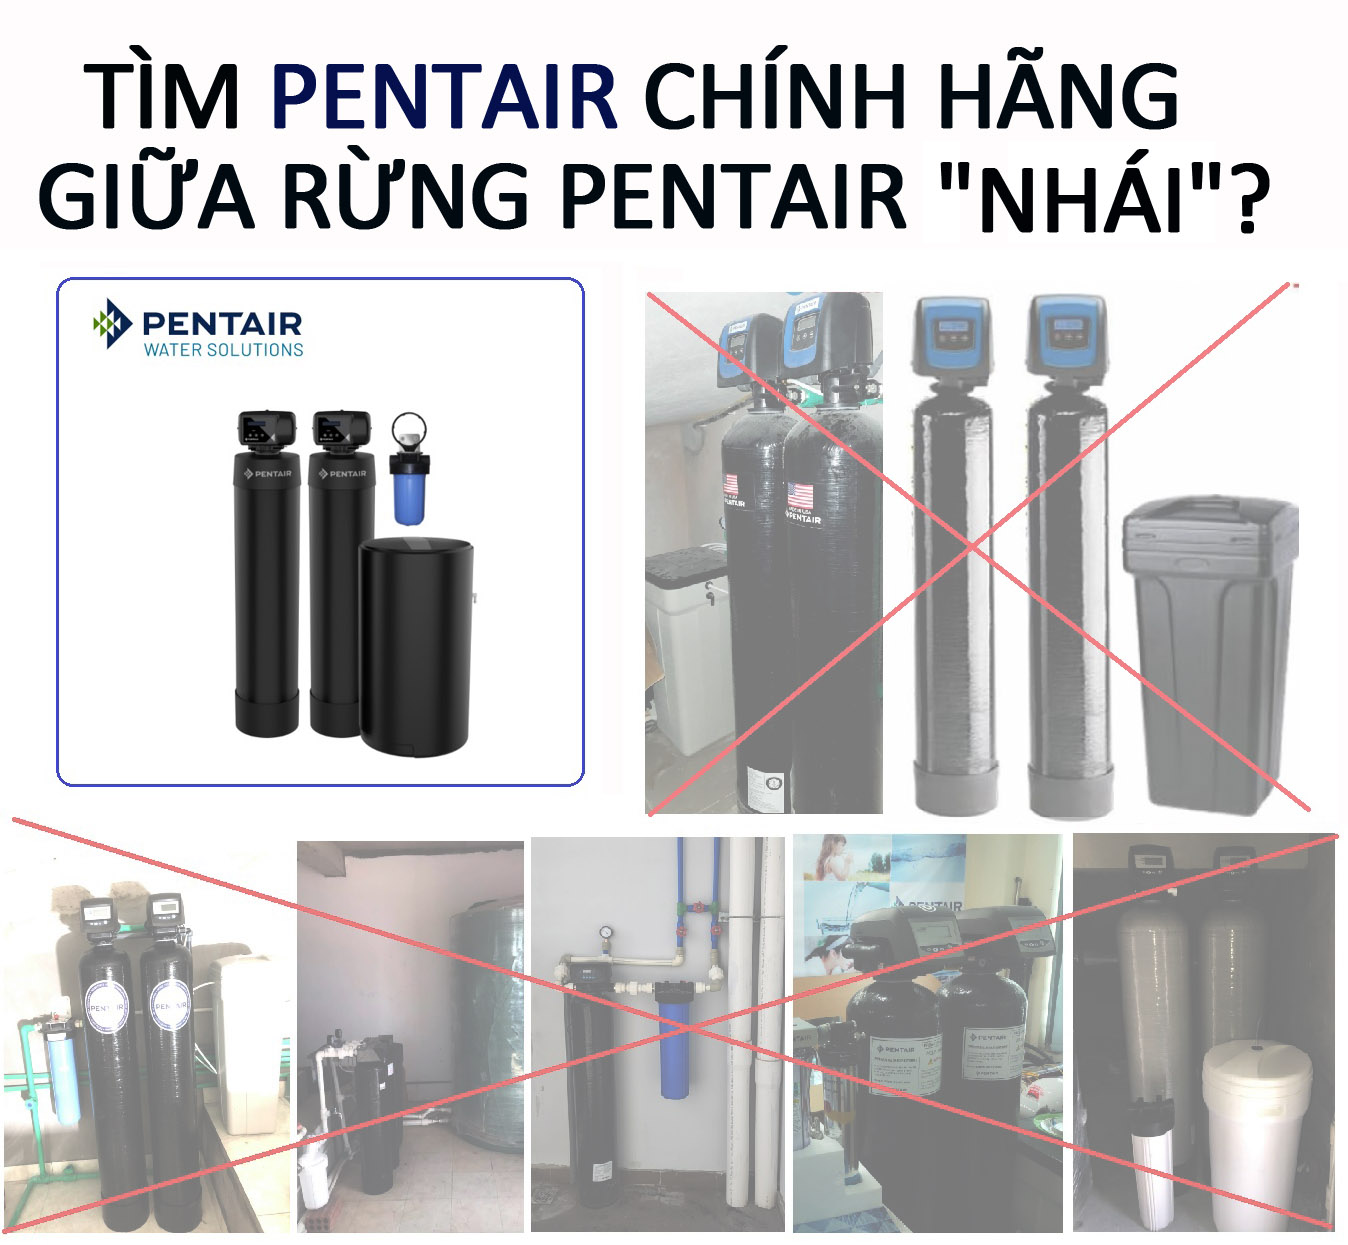 ChatGPT: Sự khác nhau giữa Pentair nhập khẩu nguyên bộ từ Mỹ và Pentair lắp ráp tại Việt Nam.